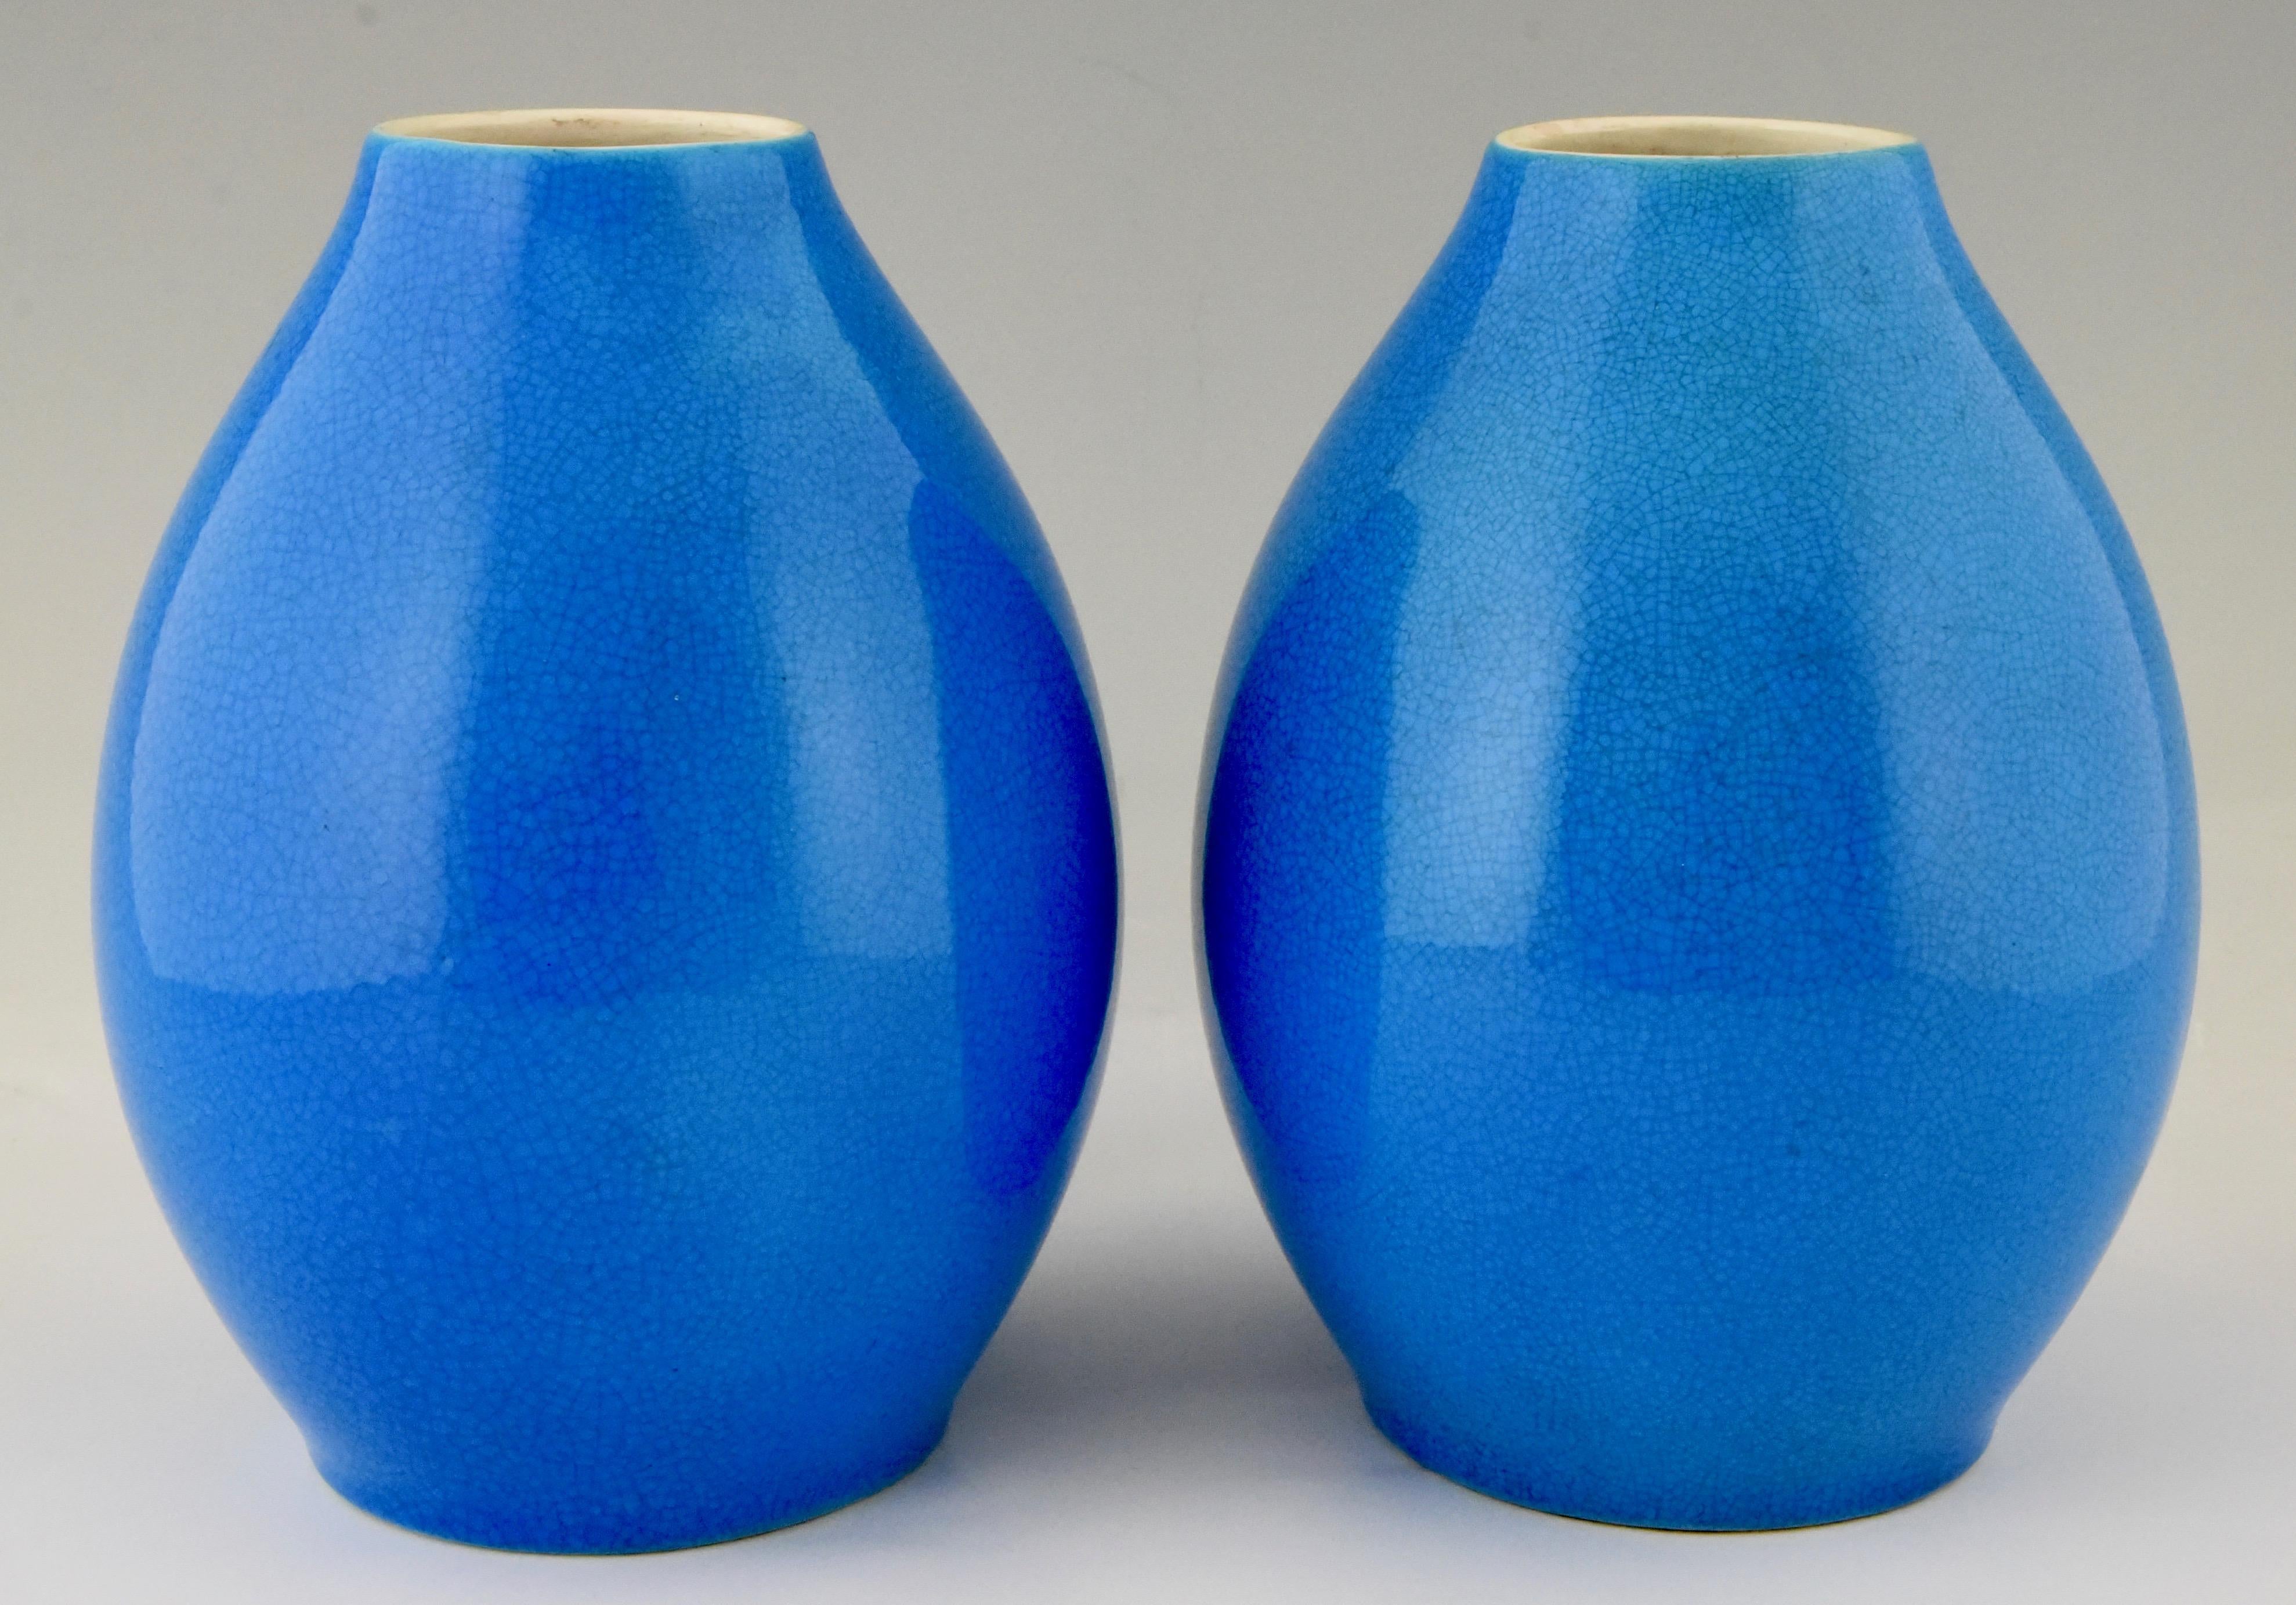 A pair of Art Deco blue craquelé vases by Boch Freres La Louvière.
Belgium, 1925. 

Similar vases are shown in the book? 